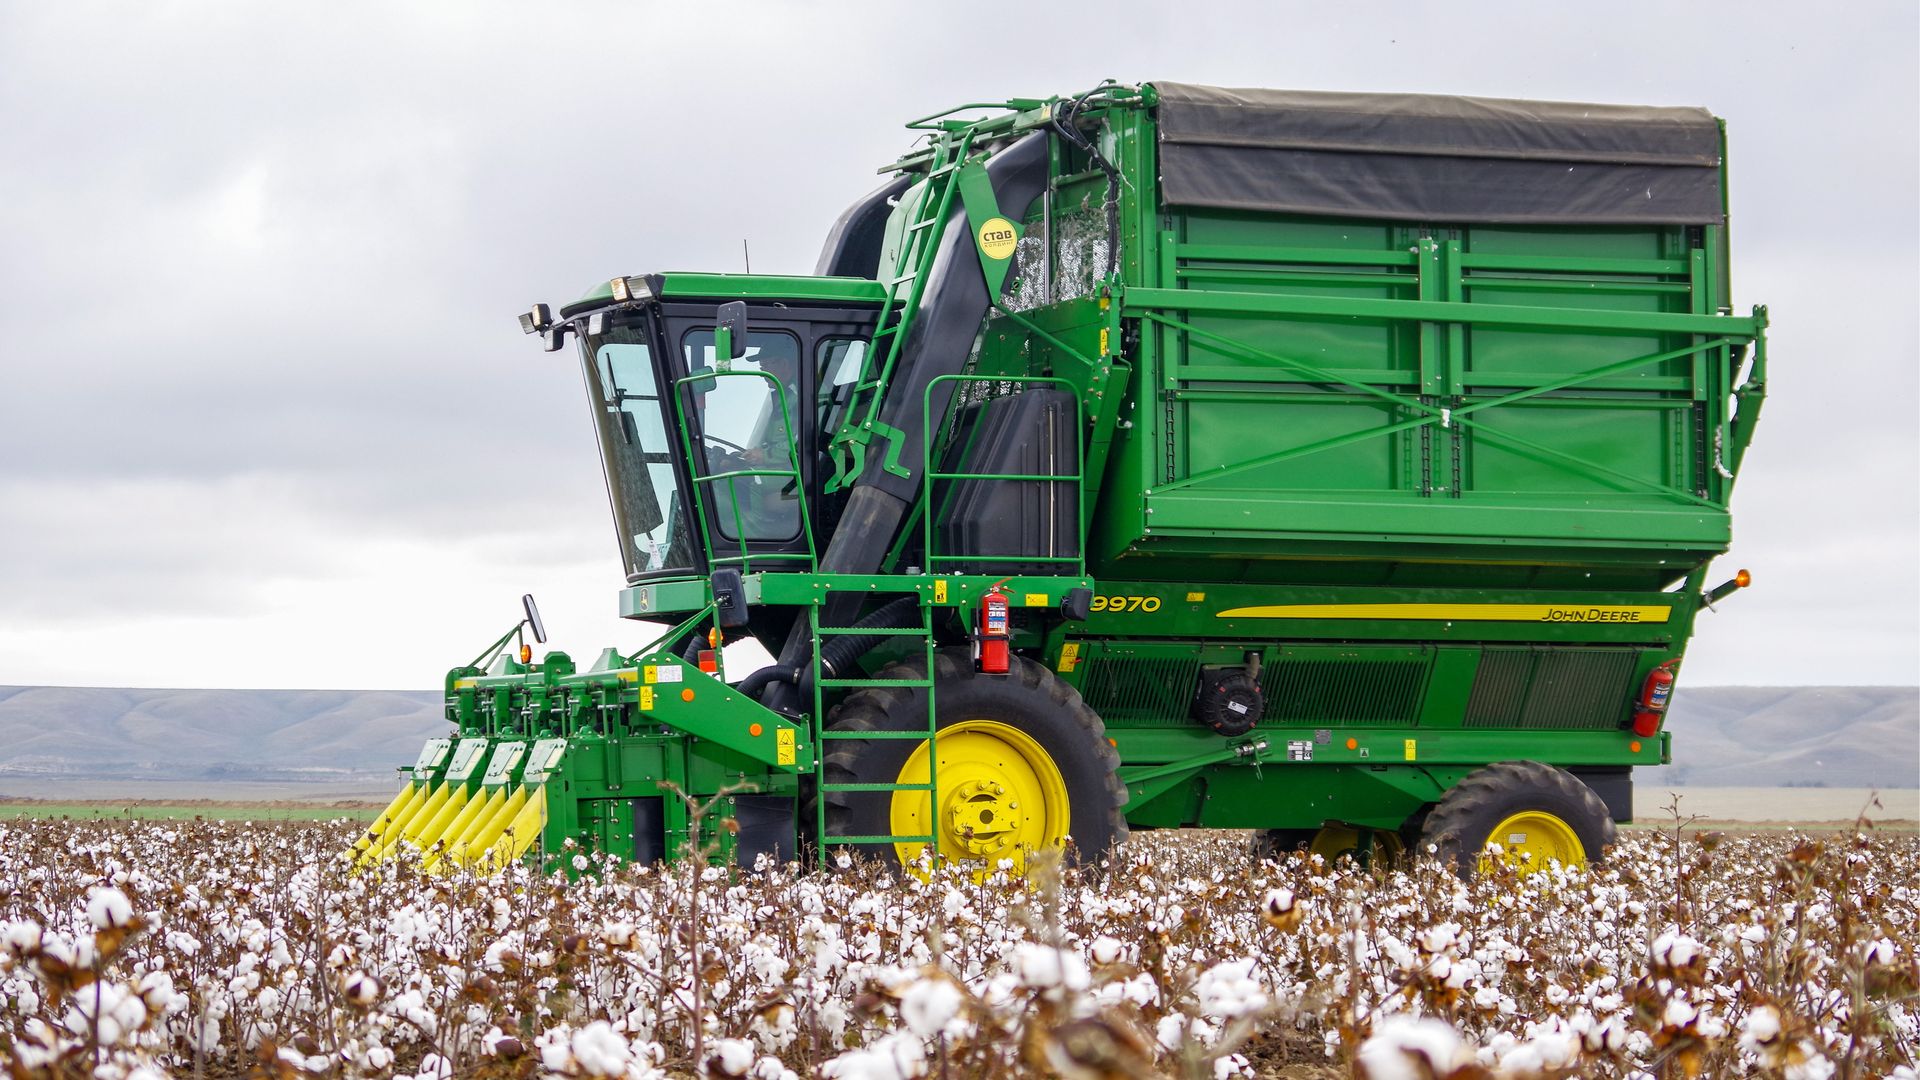 A John Deere cotton harvester